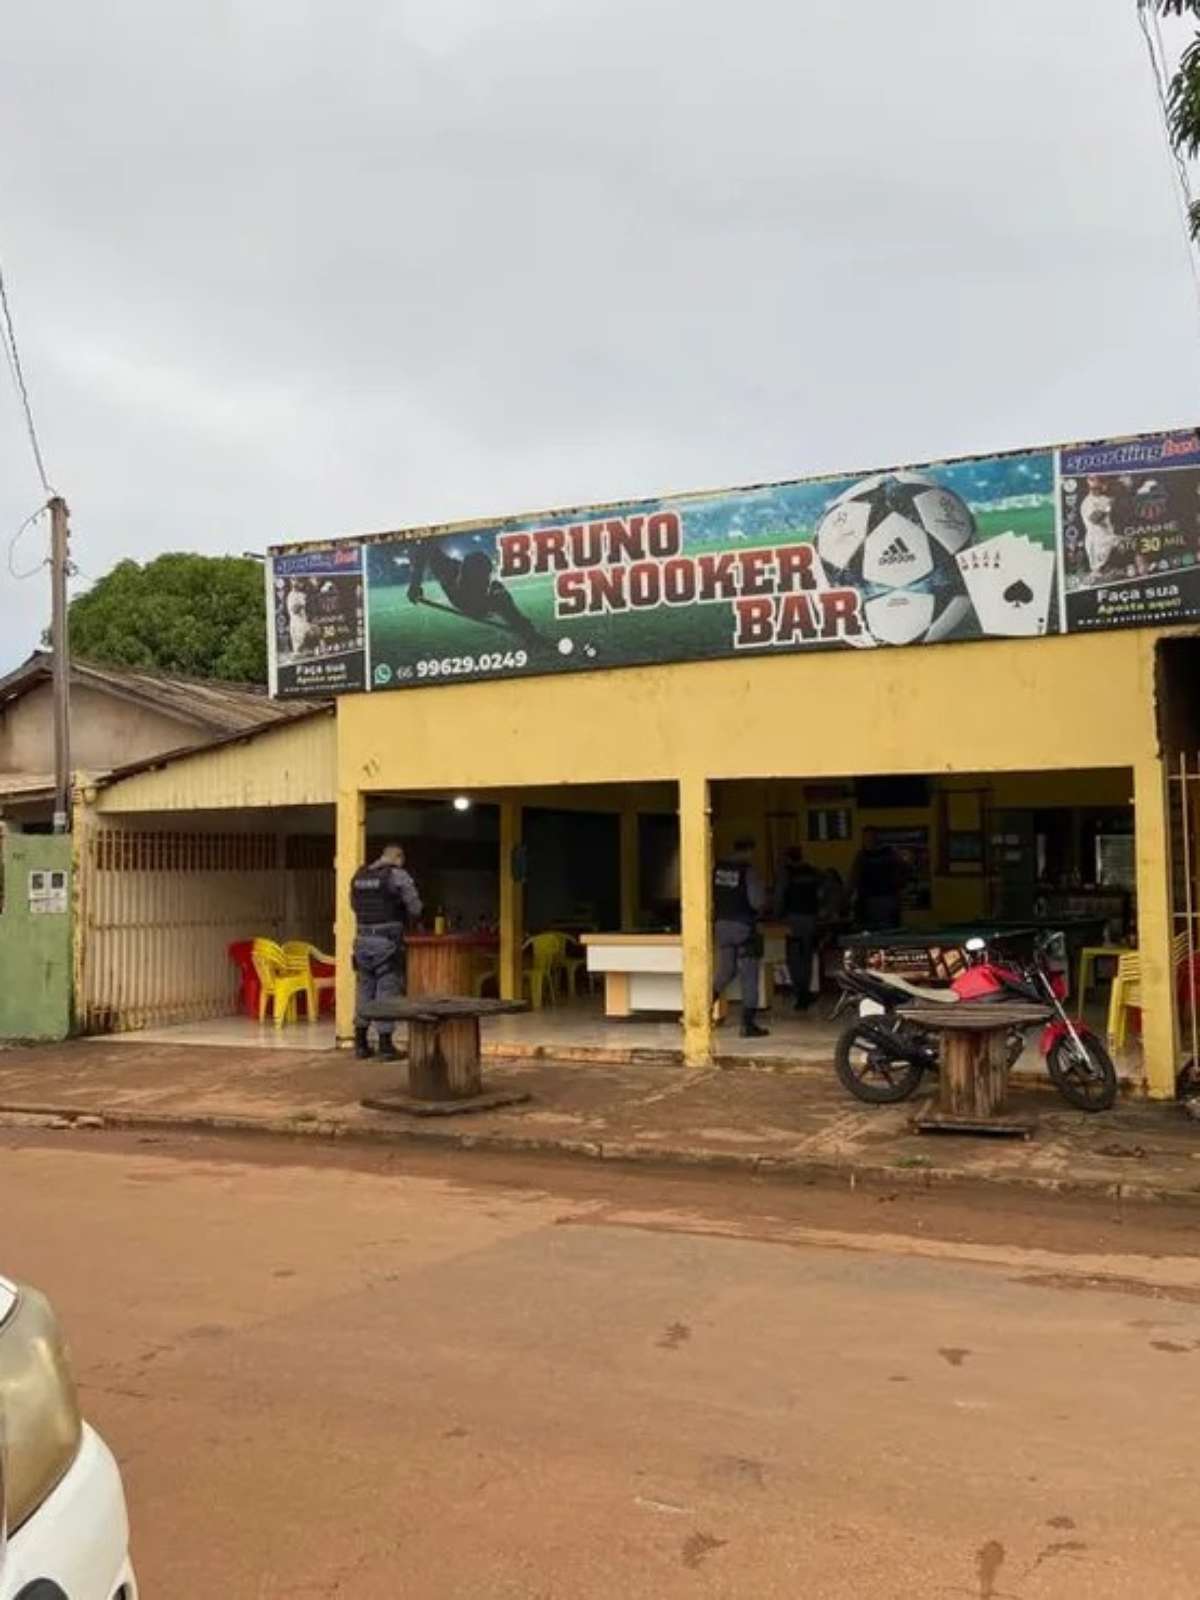 Homens matam sete pessoas após perderem jogo de sinuca no Mato Grosso